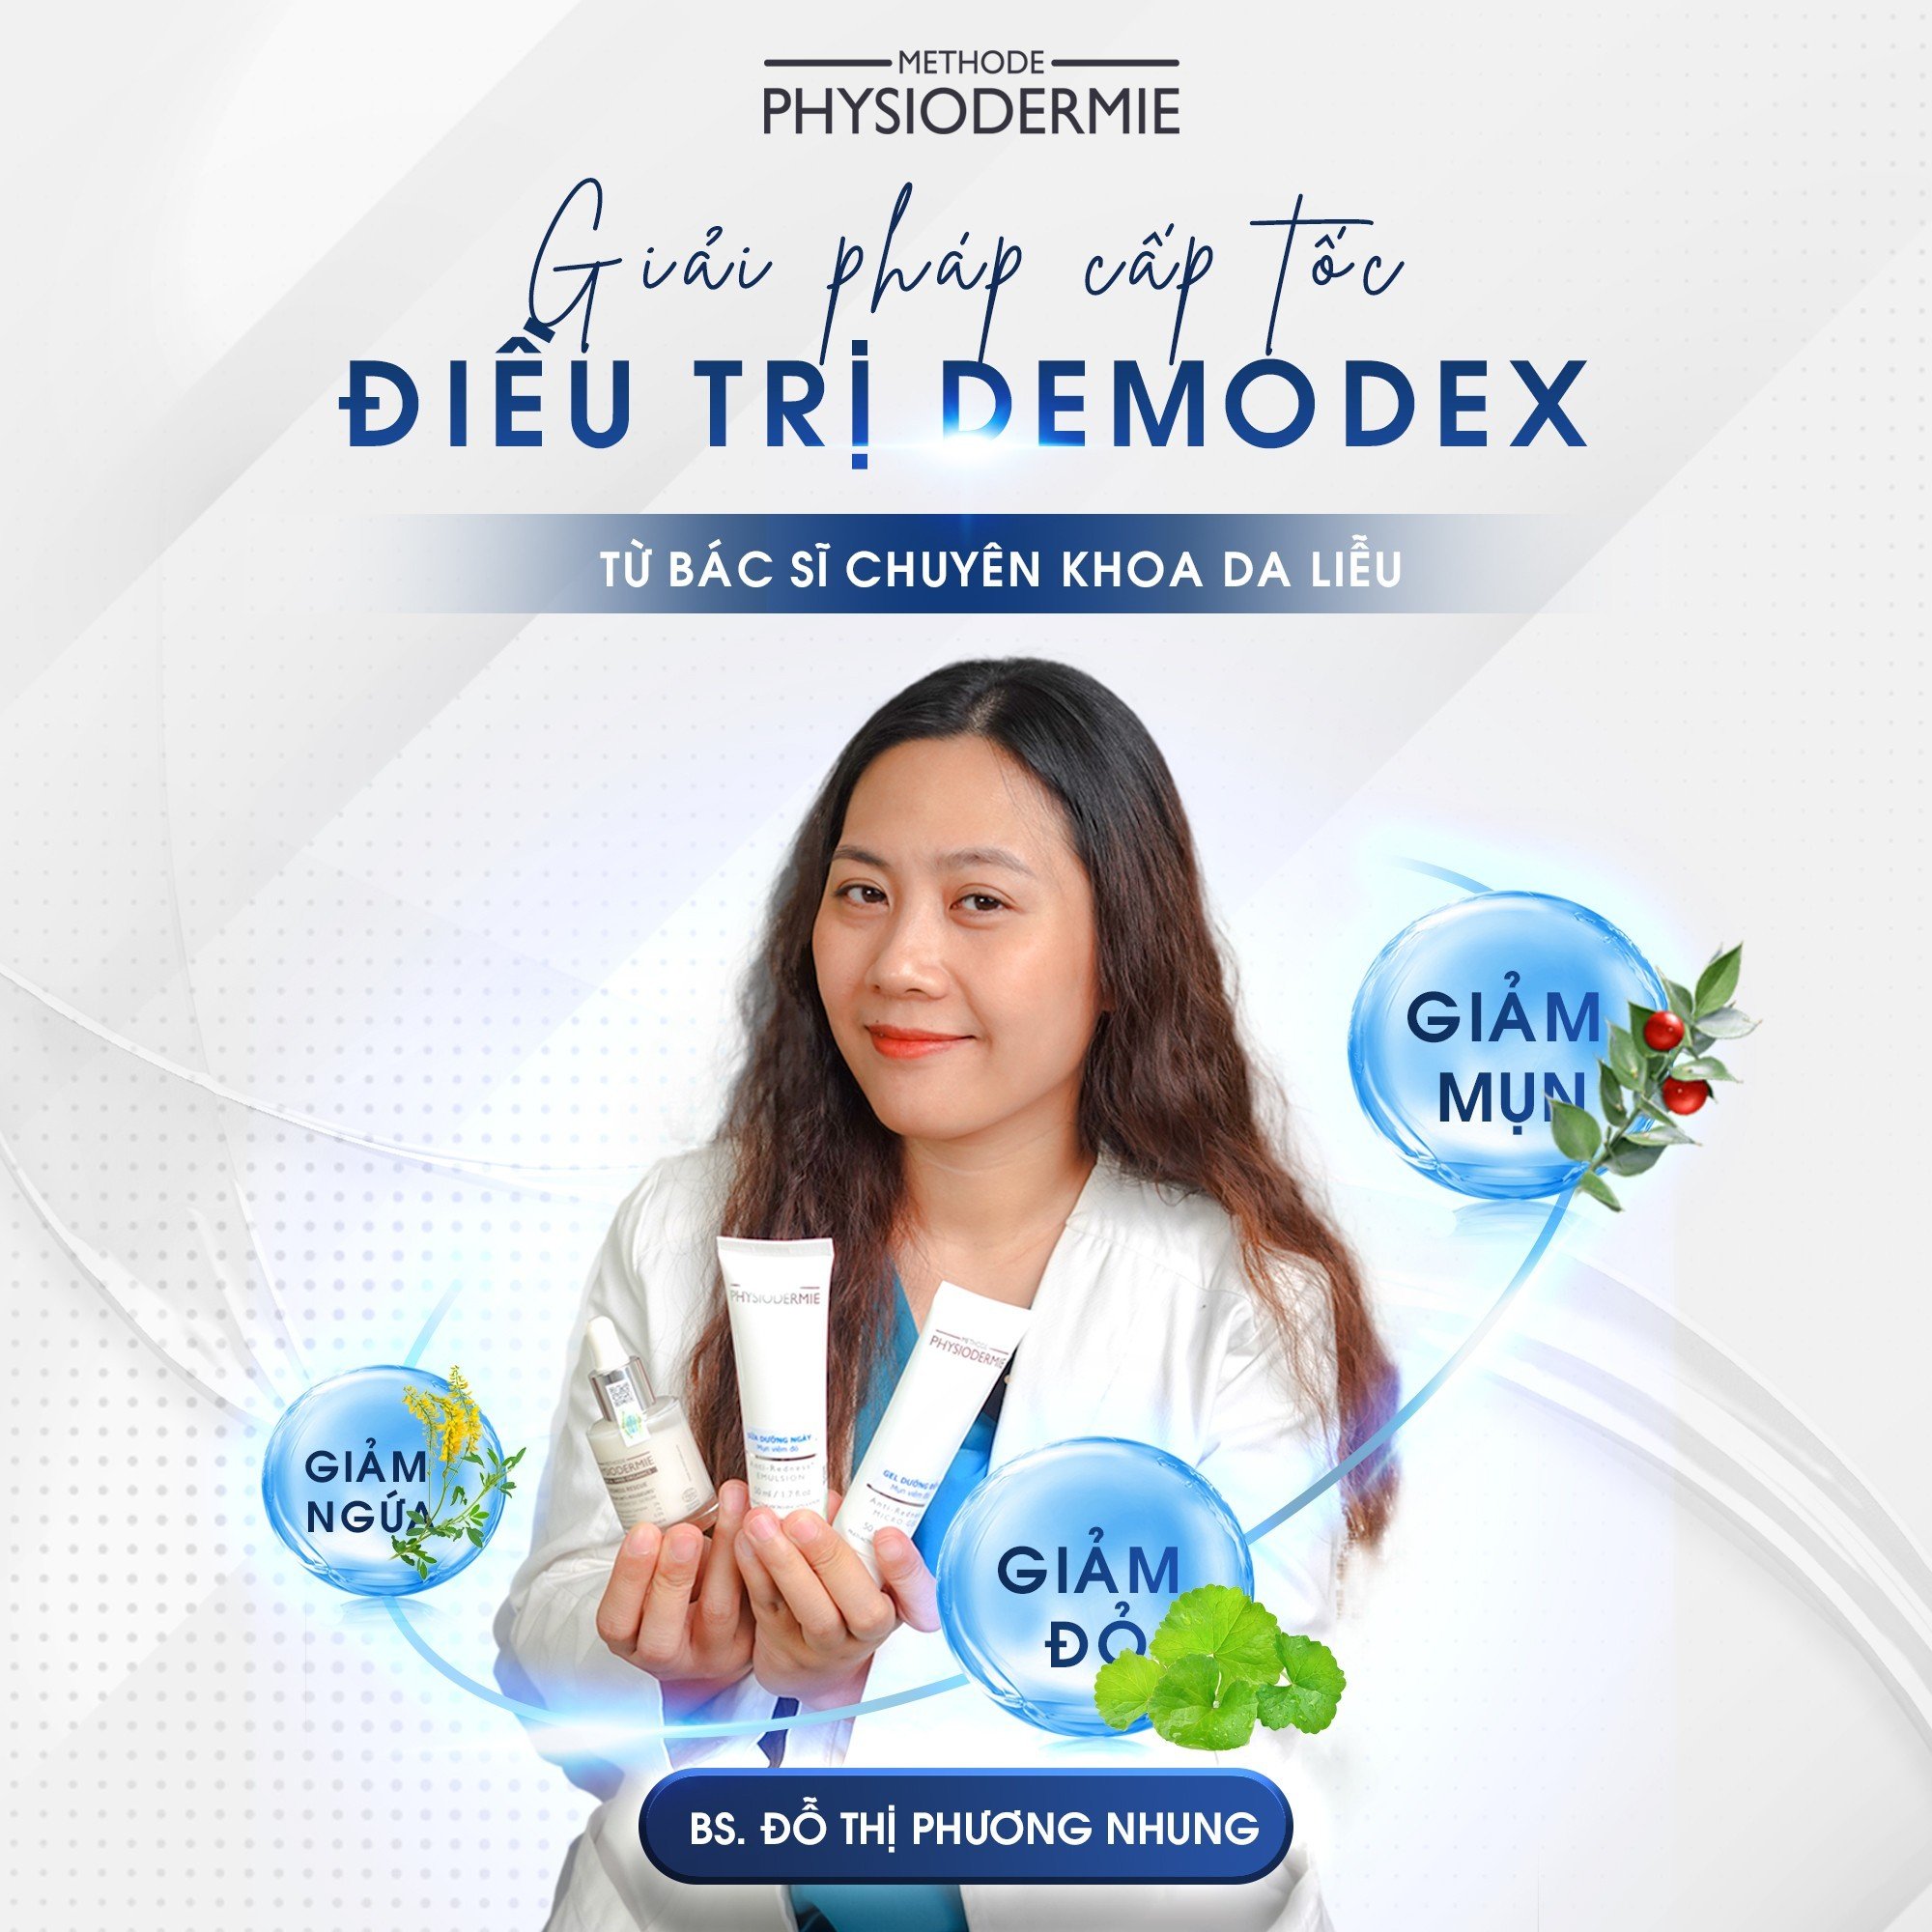 Giải pháp CẤP TỐC điều trị Demodex từ bác sĩ Chuyên Khoa Da Liễu